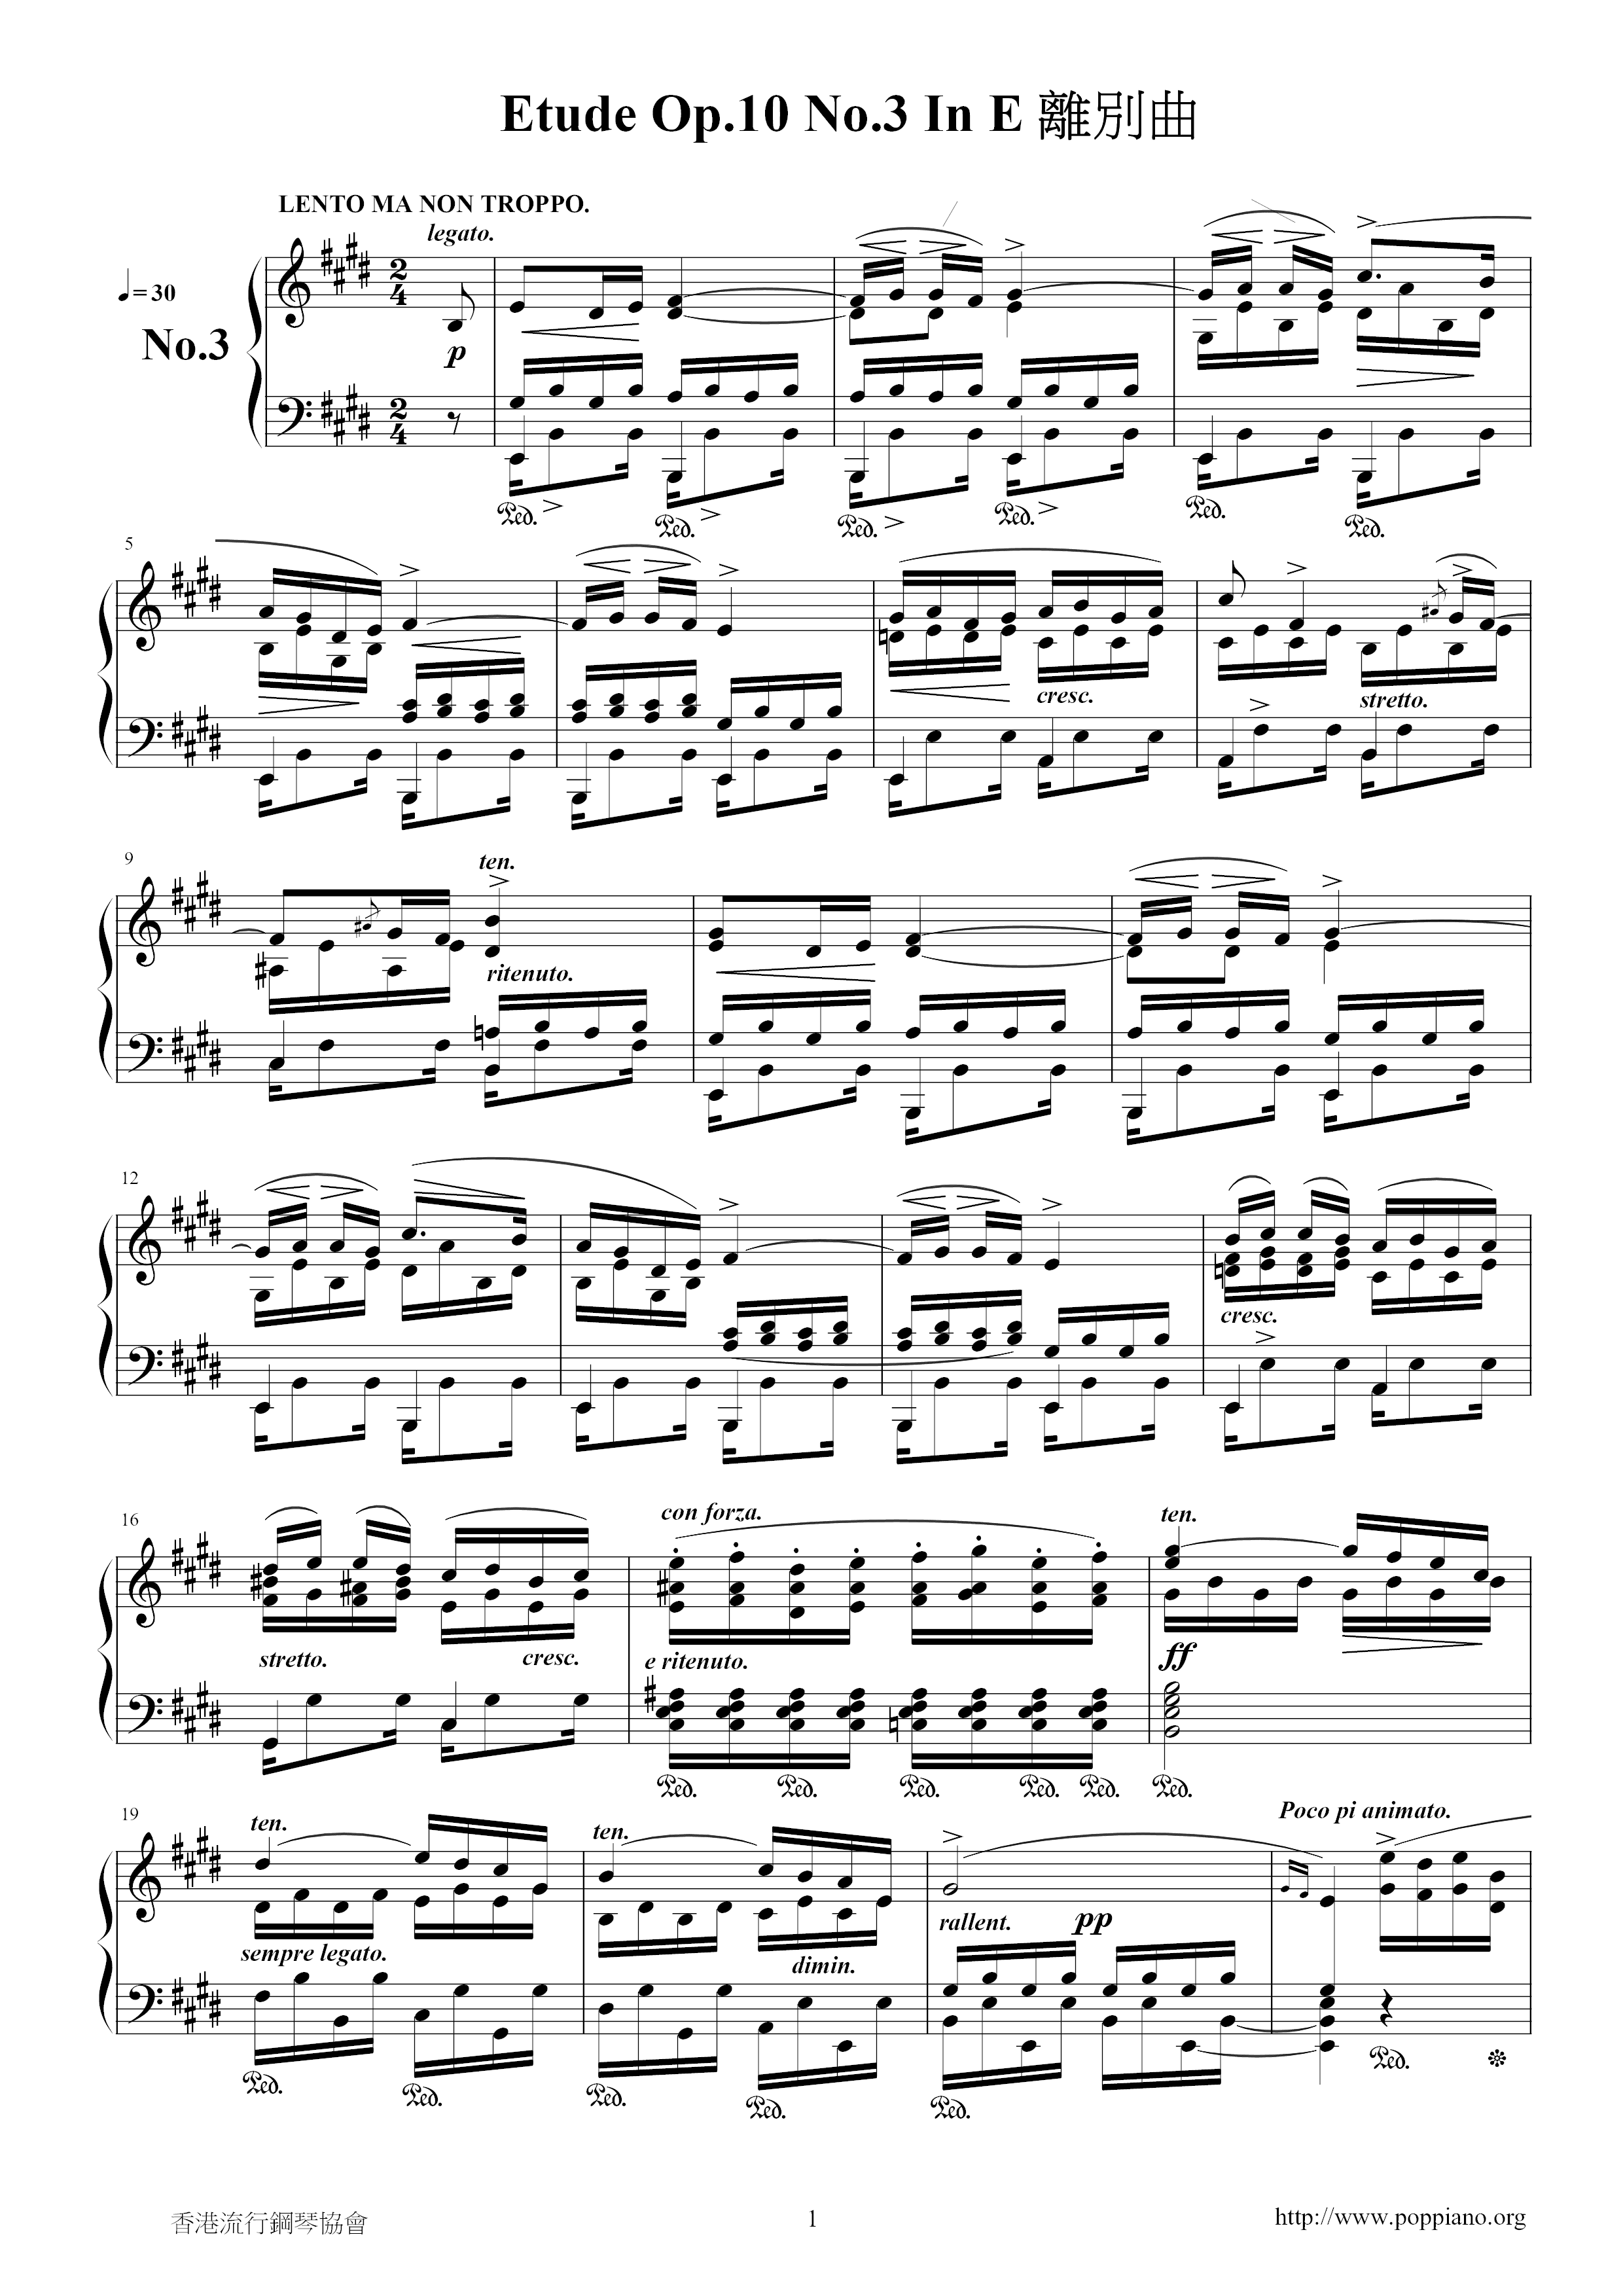 Op. 10, Etude No. 3 離別曲琴譜